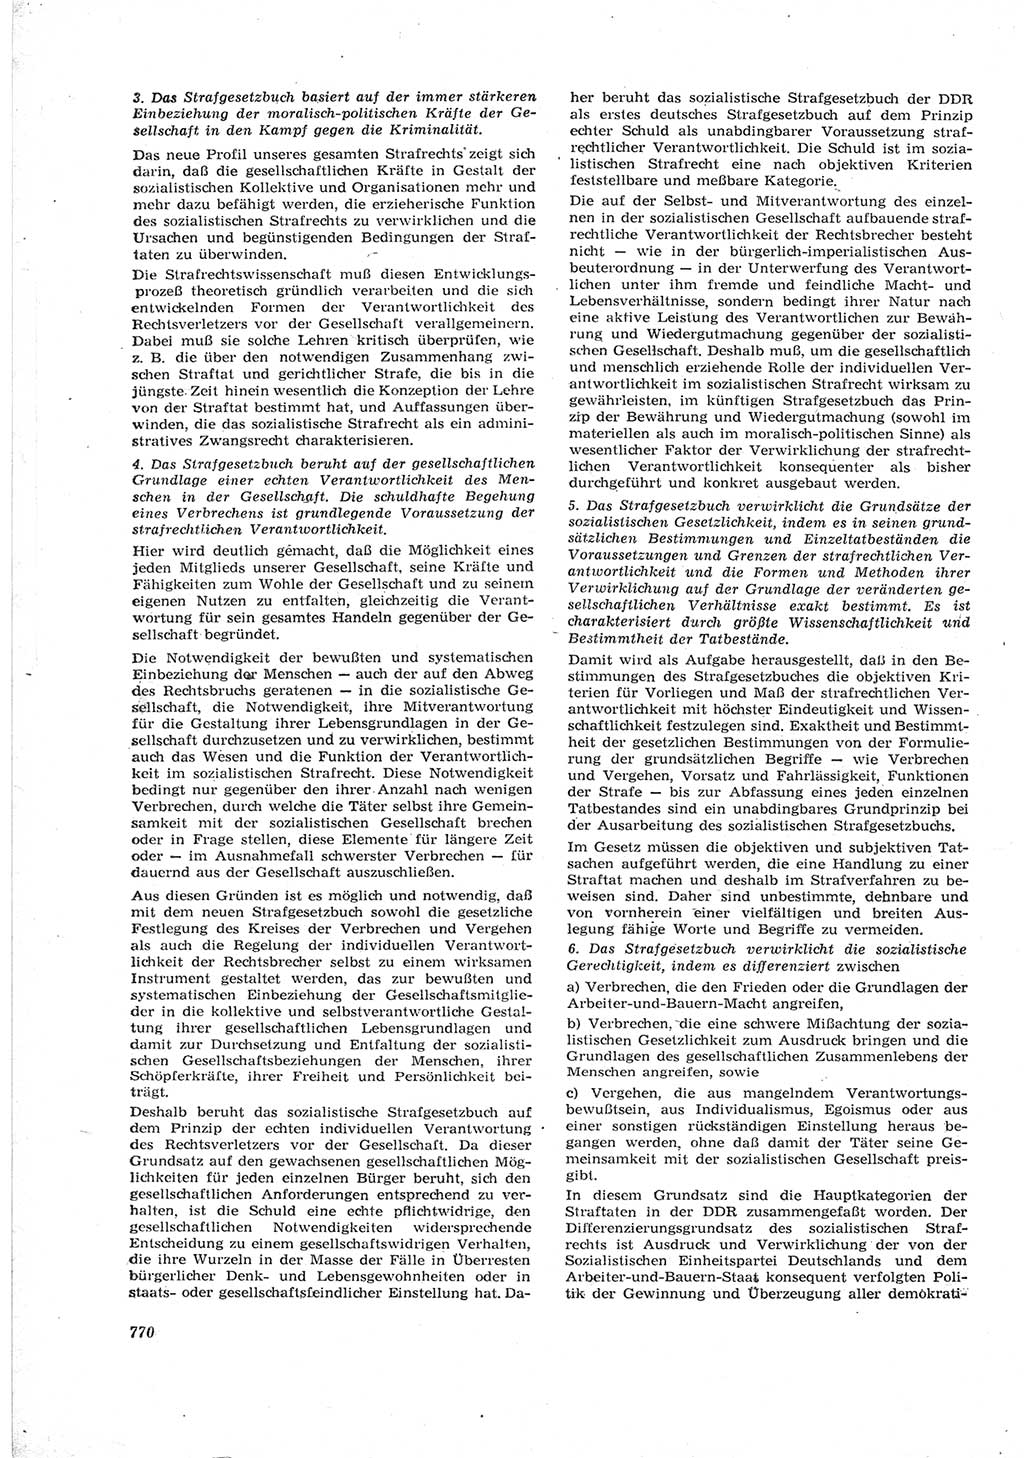 Neue Justiz (NJ), Zeitschrift für Recht und Rechtswissenschaft [Deutsche Demokratische Republik (DDR)], 17. Jahrgang 1963, Seite 770 (NJ DDR 1963, S. 770)